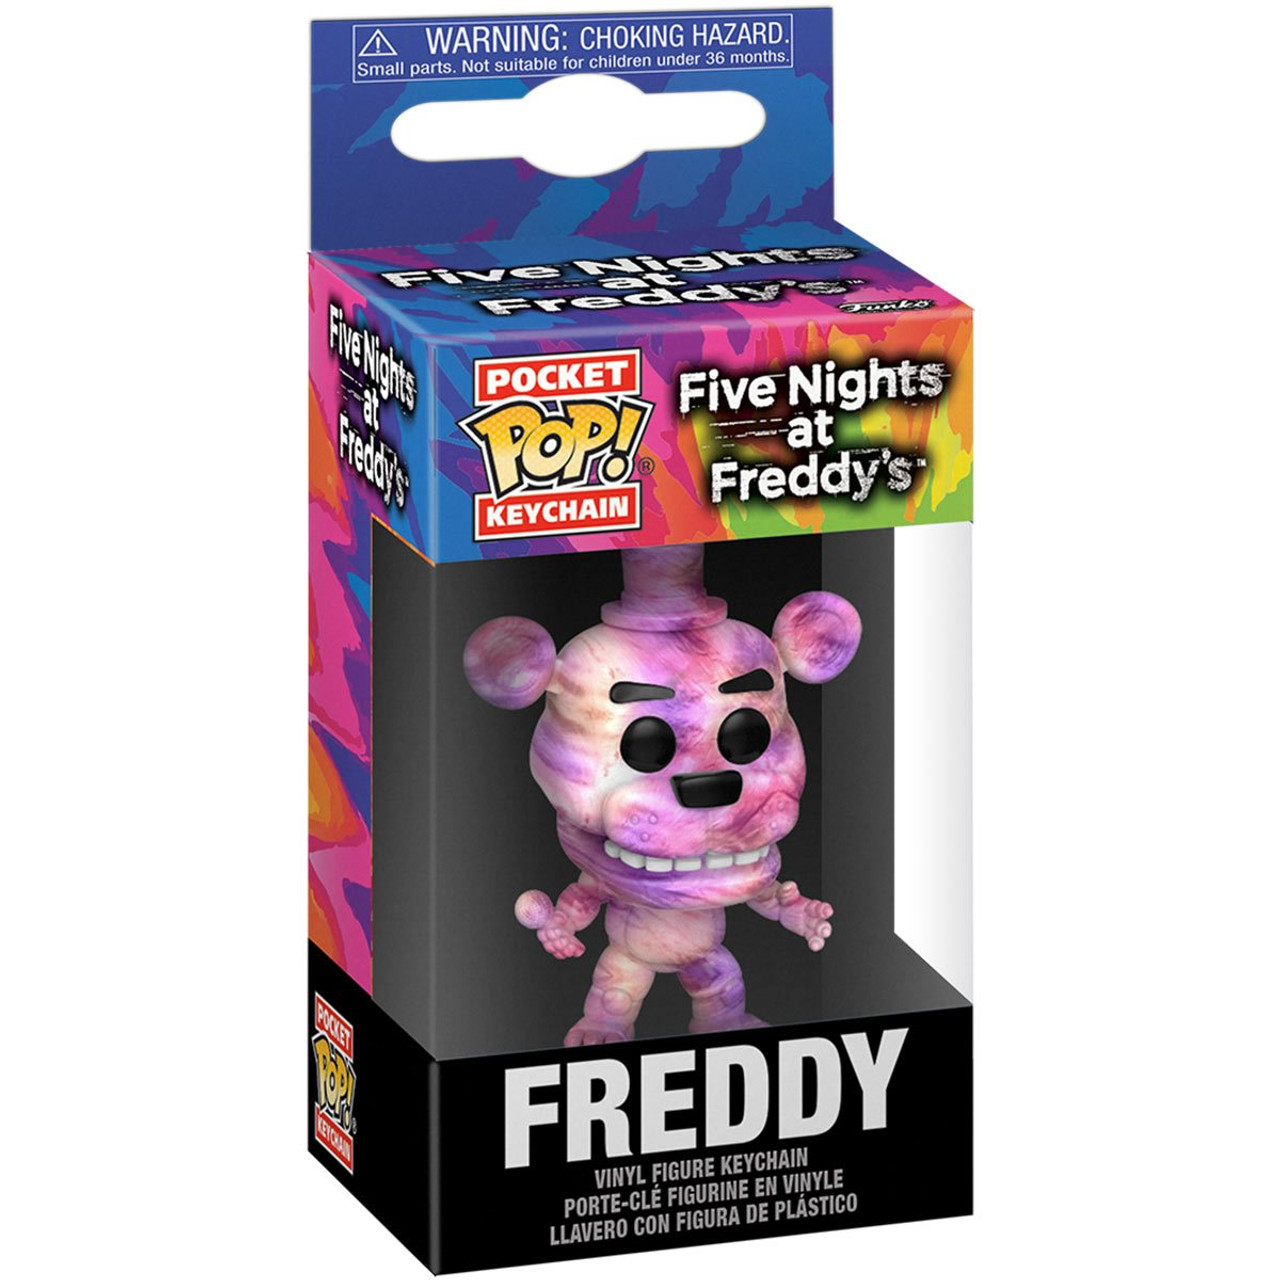 Funko Five Nights at Freddy's Action Figure - Tie-Dye Freddy